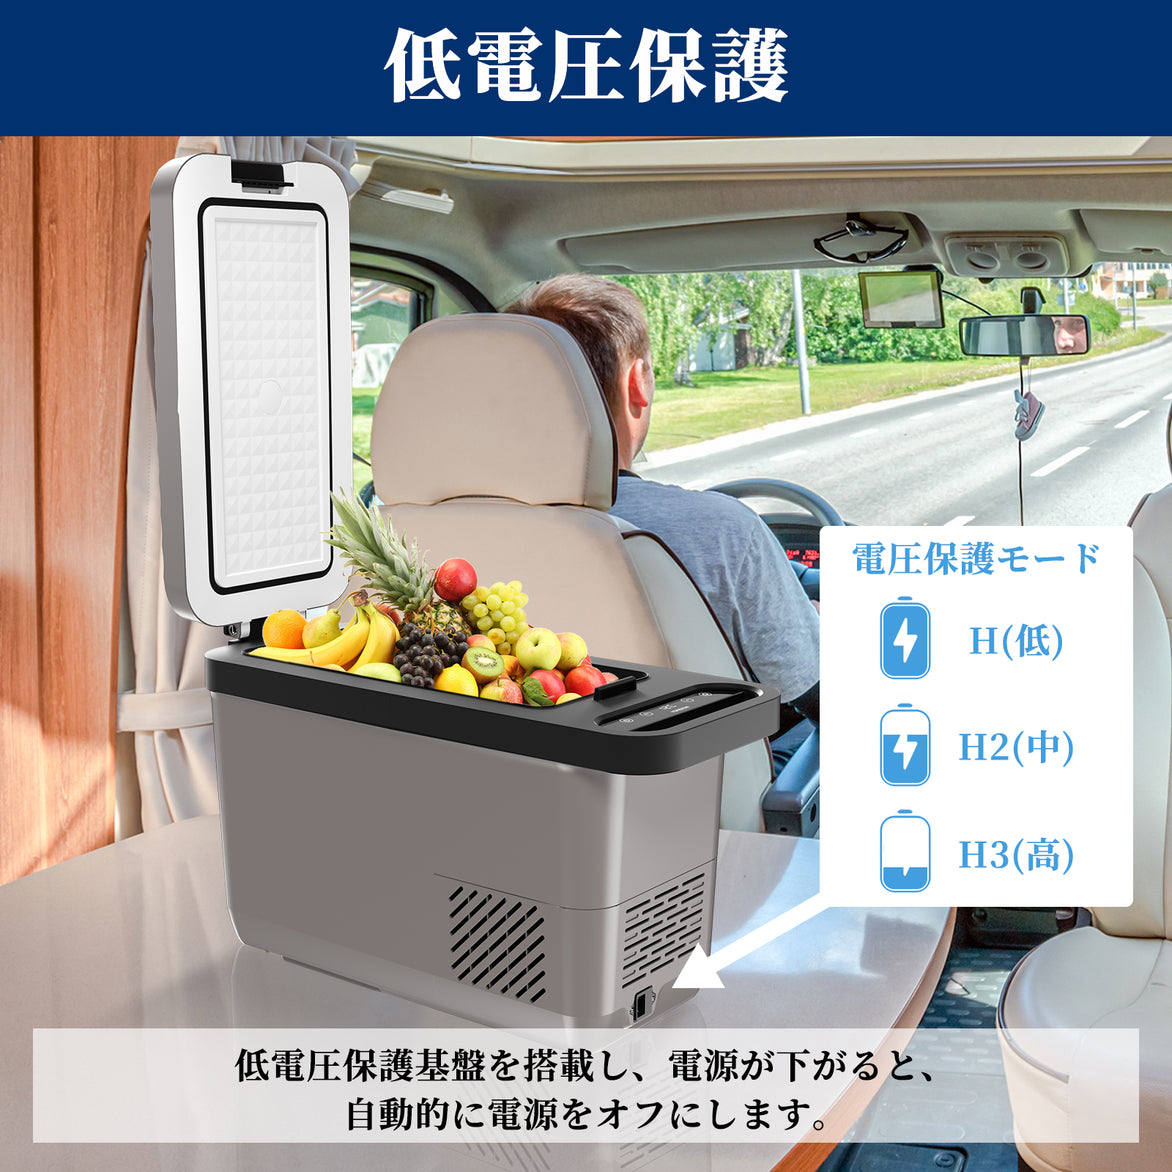 【大容量26L】ポータブル冷蔵庫 車載用冷蔵庫 急速冷凍 車中泊 キャンプ